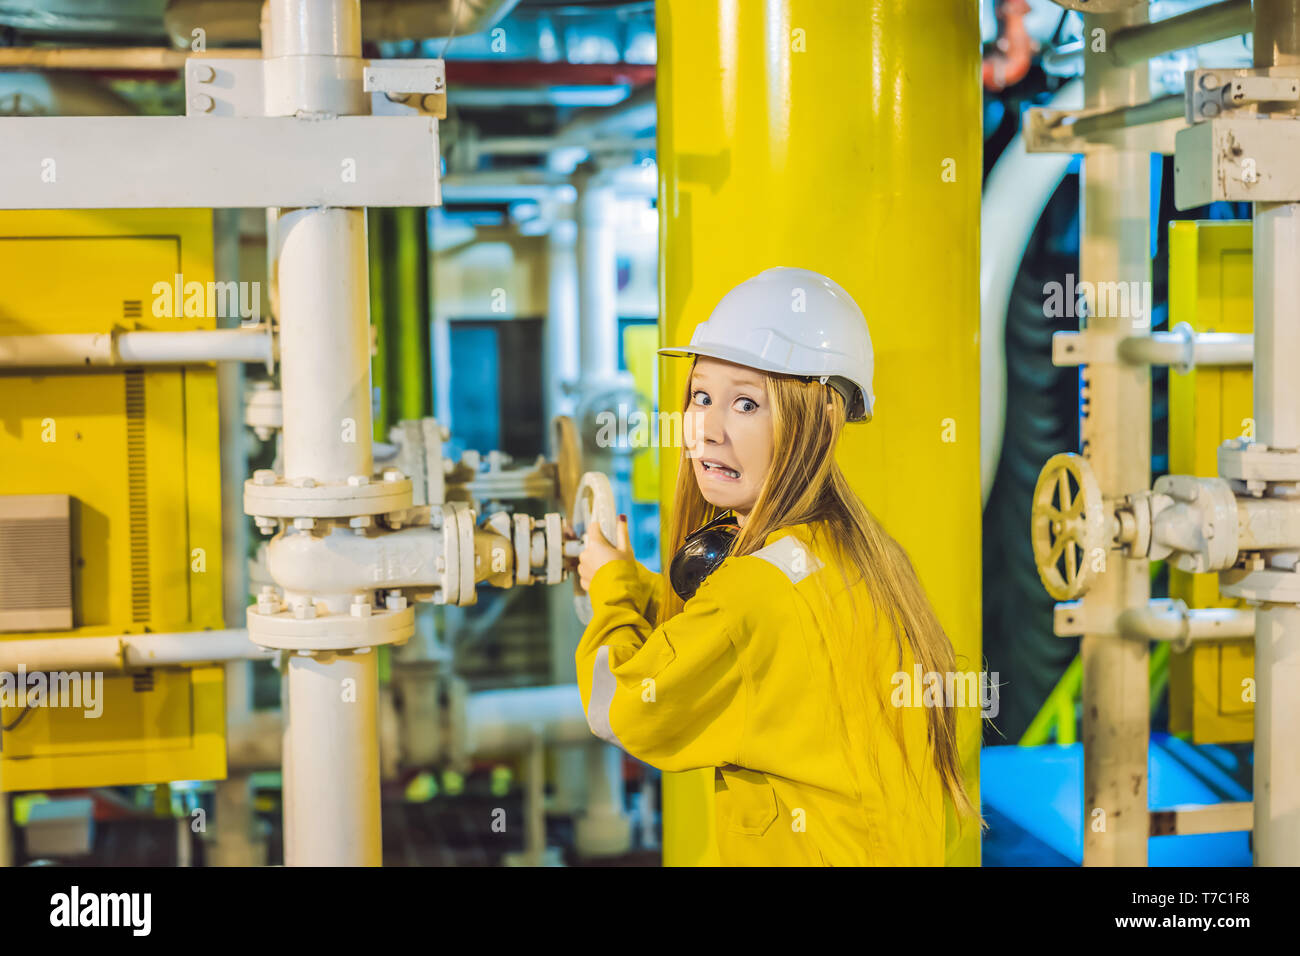 Jeune femme en uniforme de travail jaune, les lunettes et le casque dans un environnement industriel, plate-forme d'huile ou de gaz liquéfié plant Banque D'Images